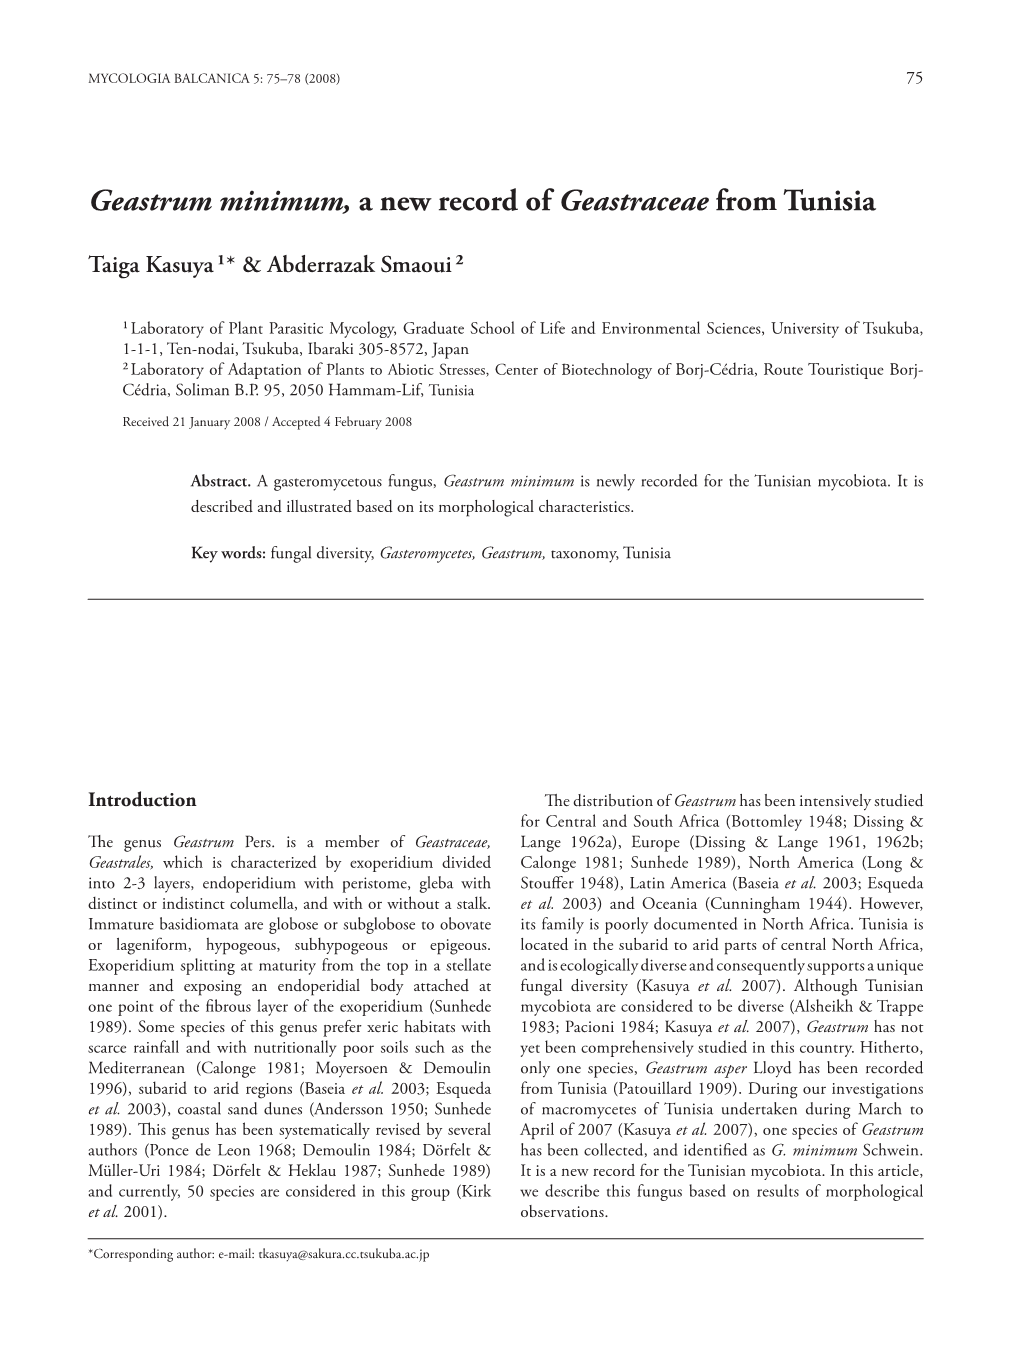 Geastrum Minimum, a New Record of Geastraceae from Tunisia